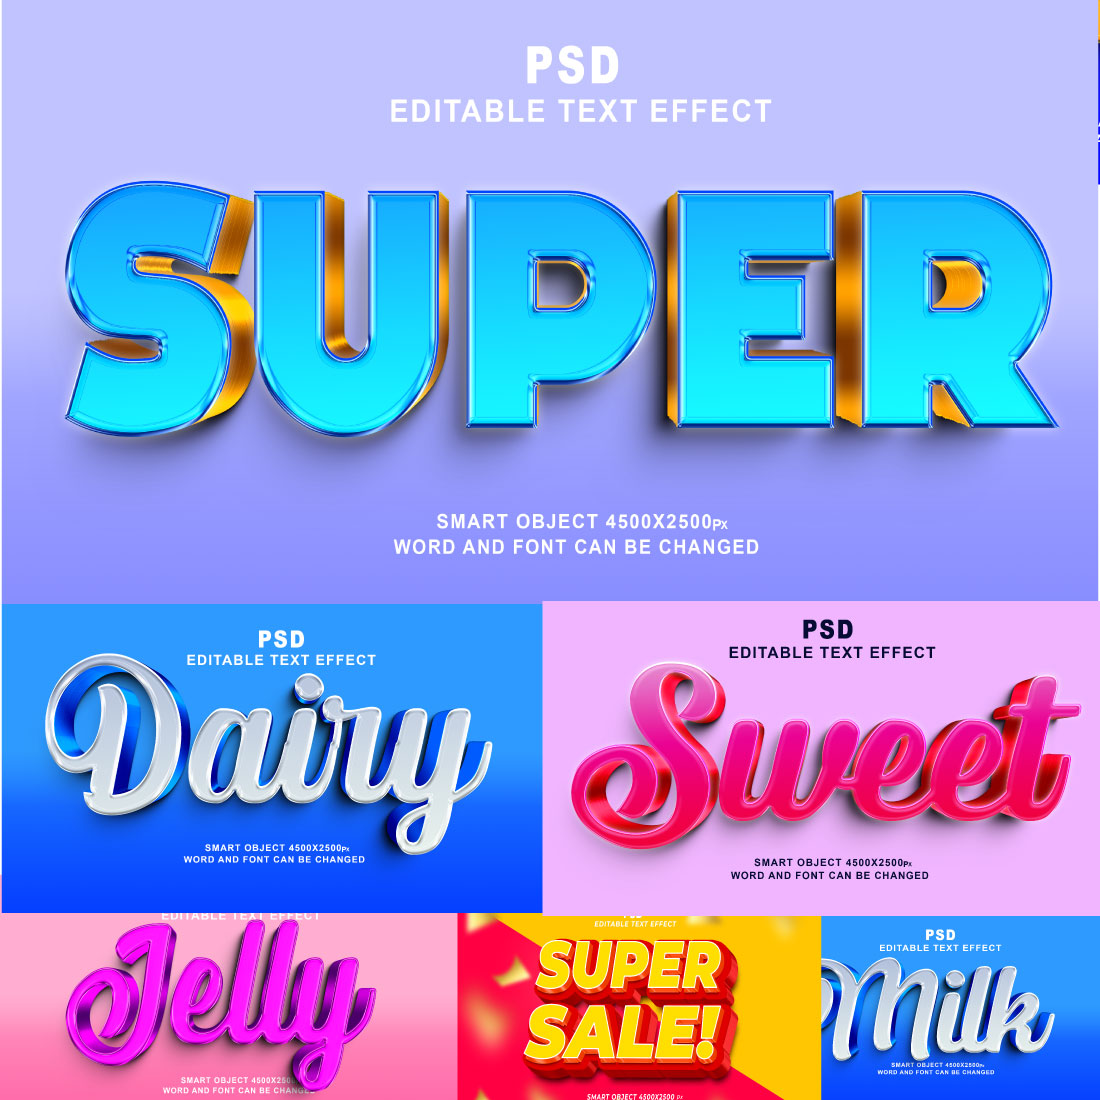 Best PSD bundle 3D editable text effect preview image.